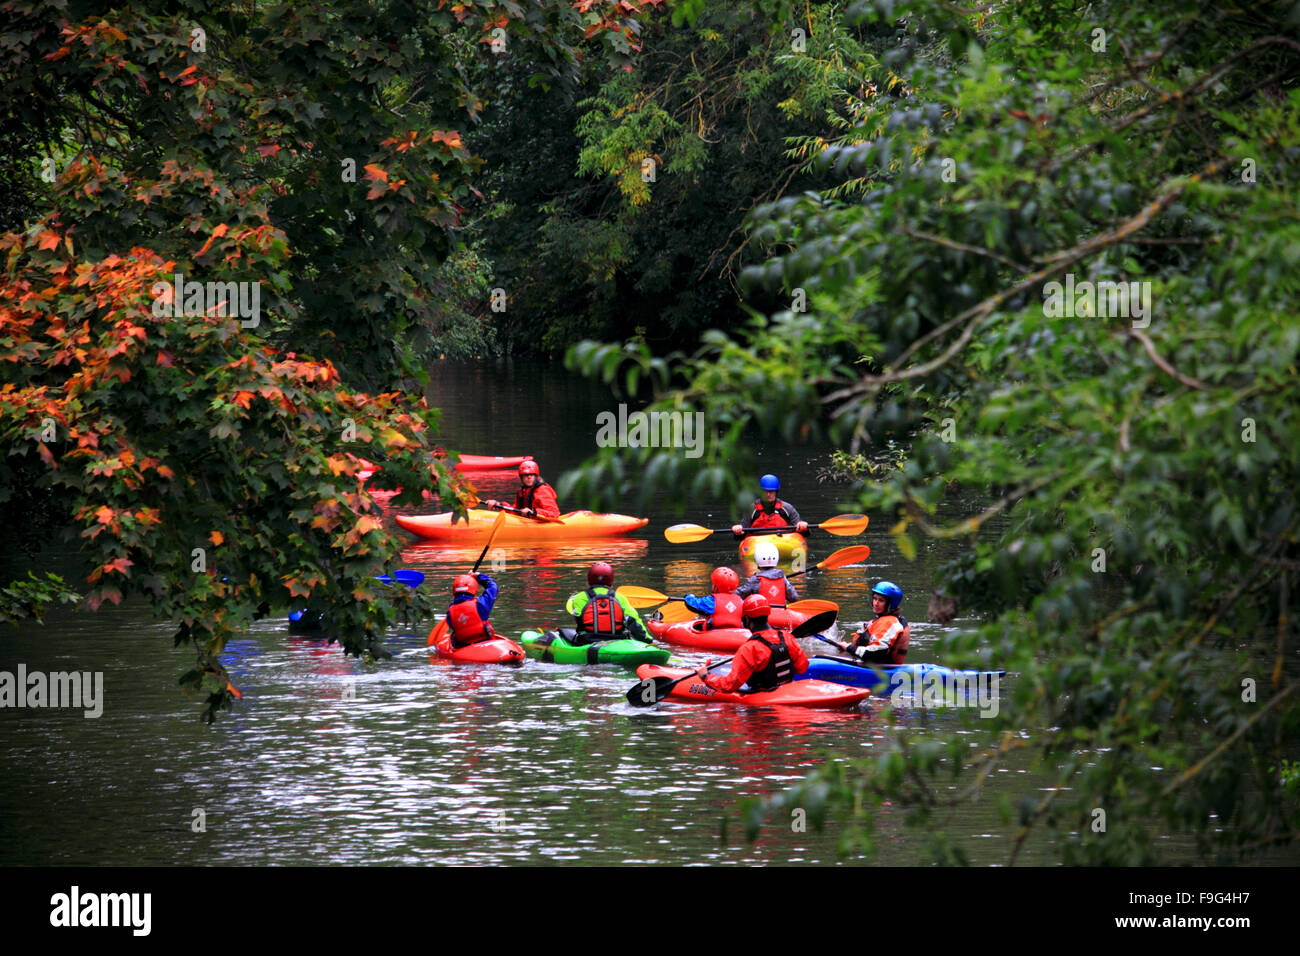 Les canoéistes portant des gilets et des casques sur la rivière leam, Leamington Spa, Warwickshire. Banque D'Images